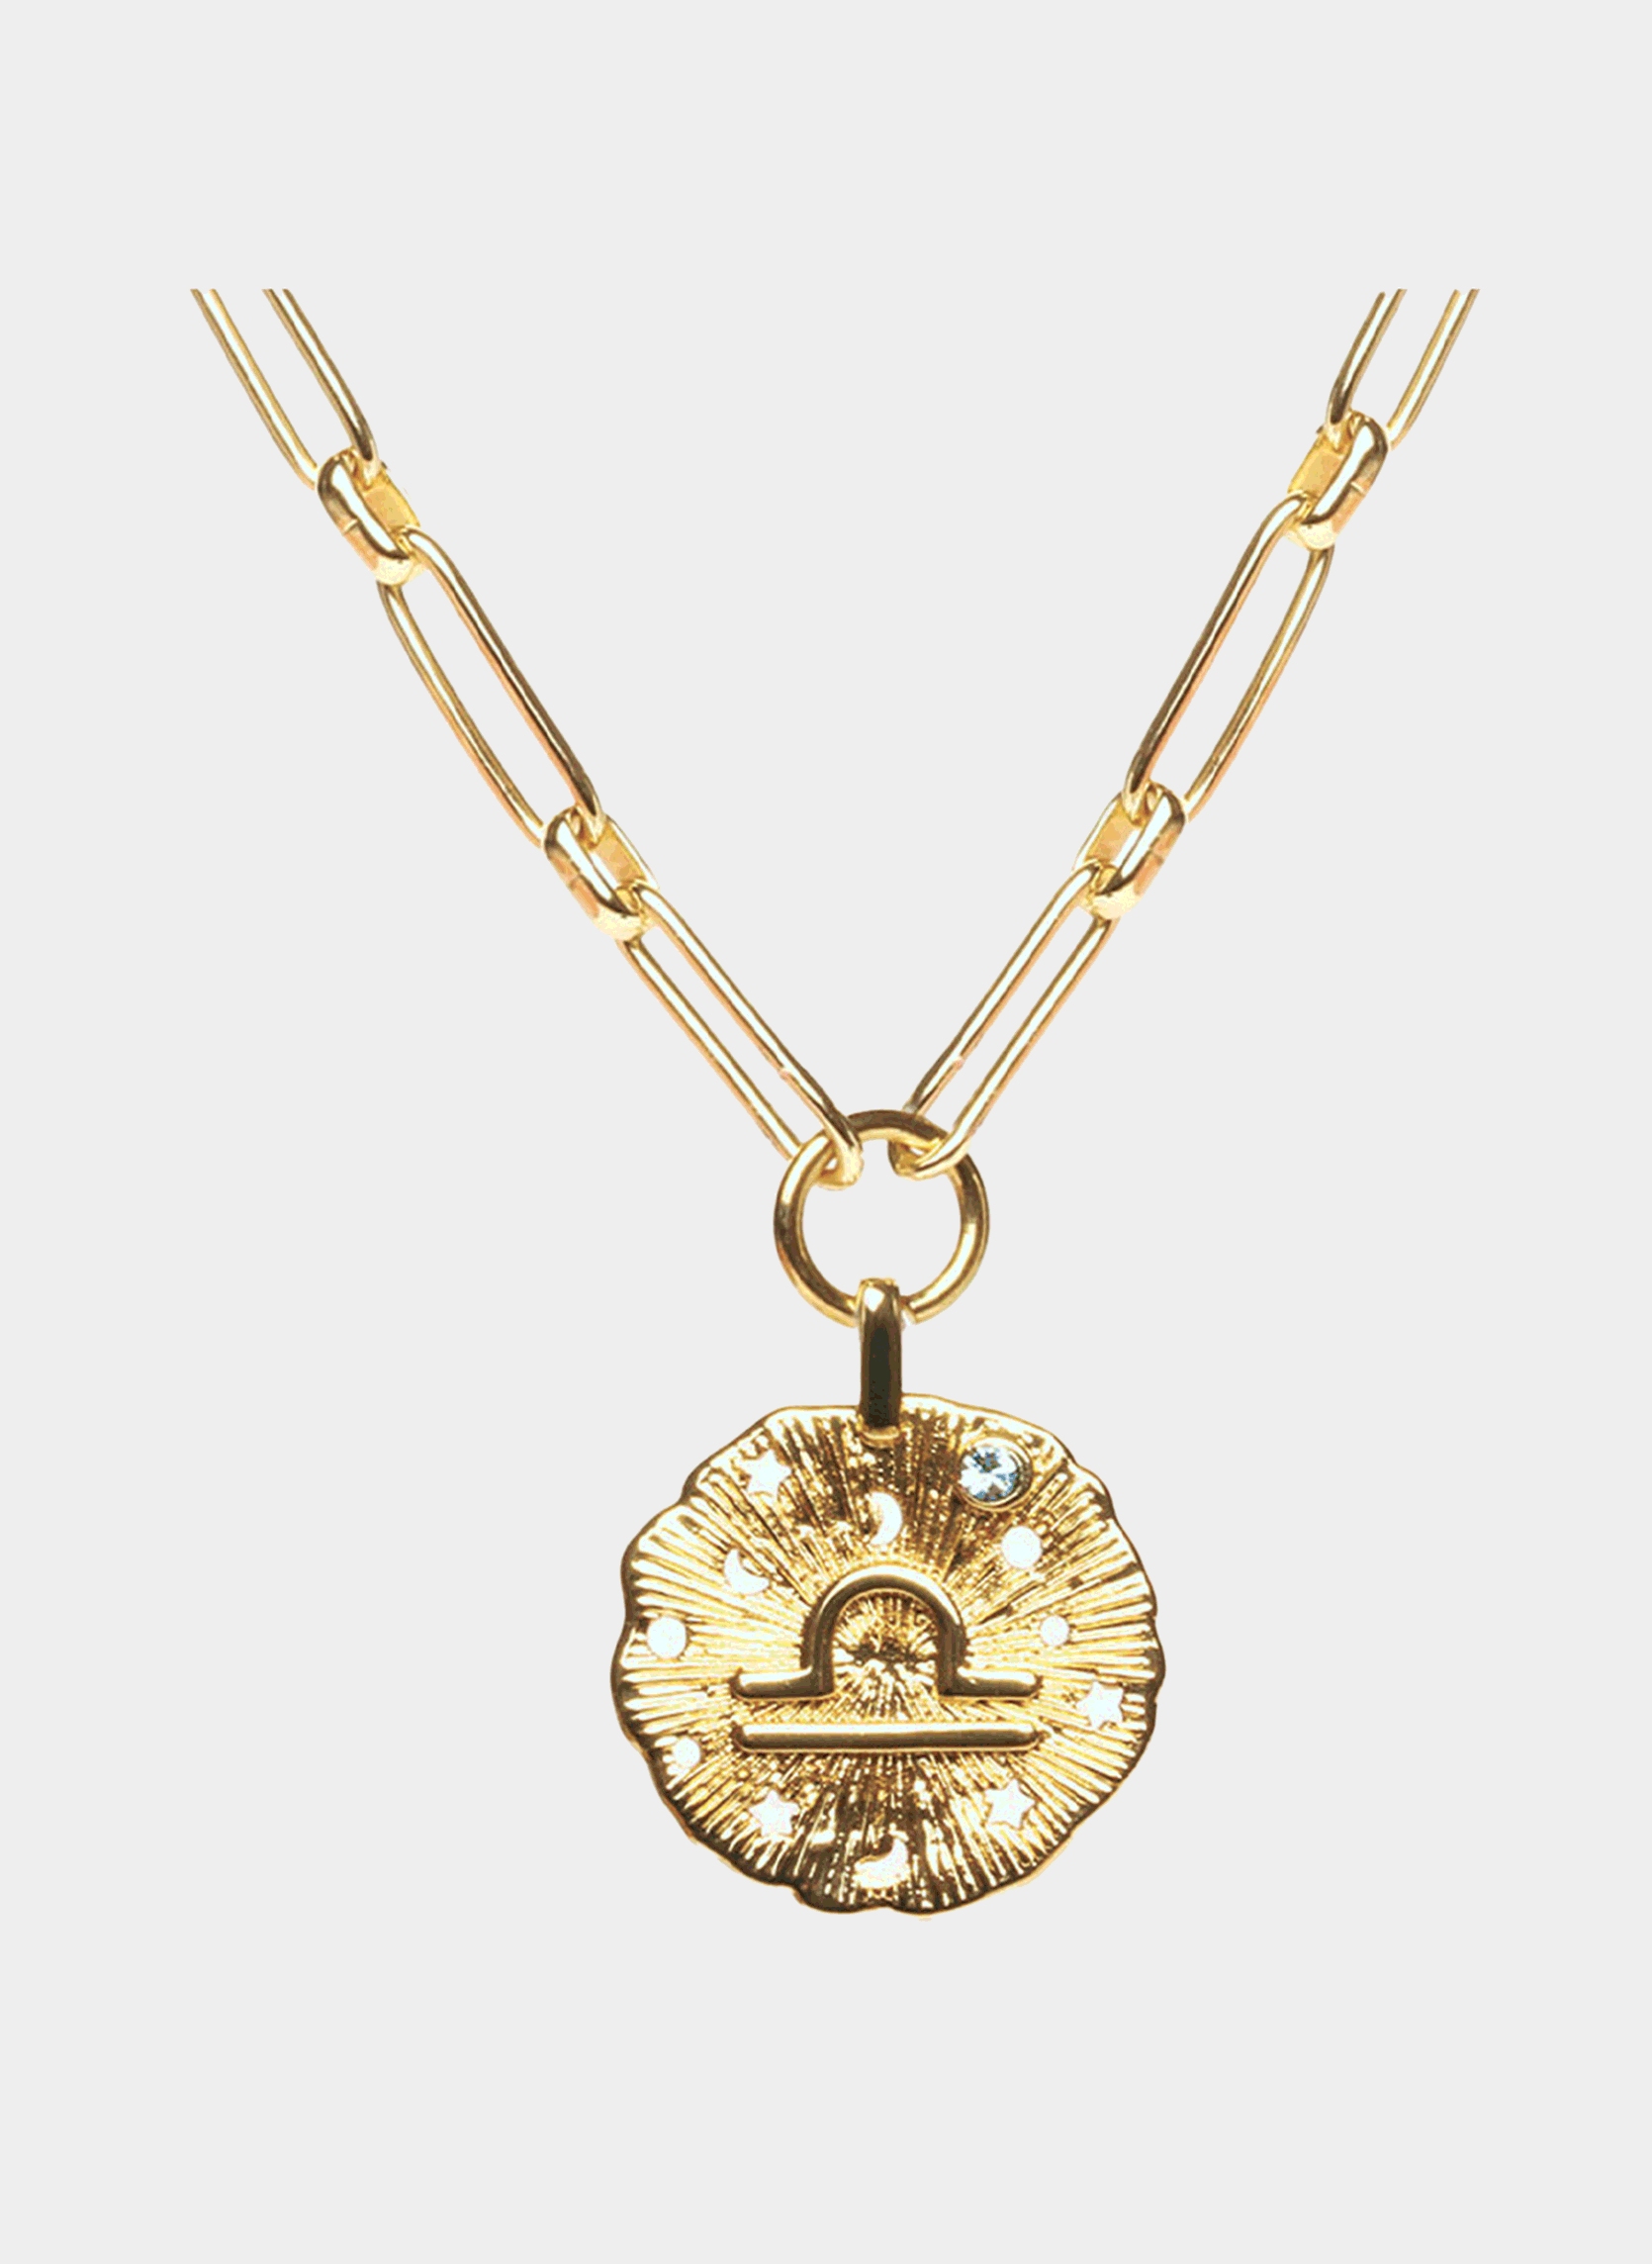 Astro chain necklace